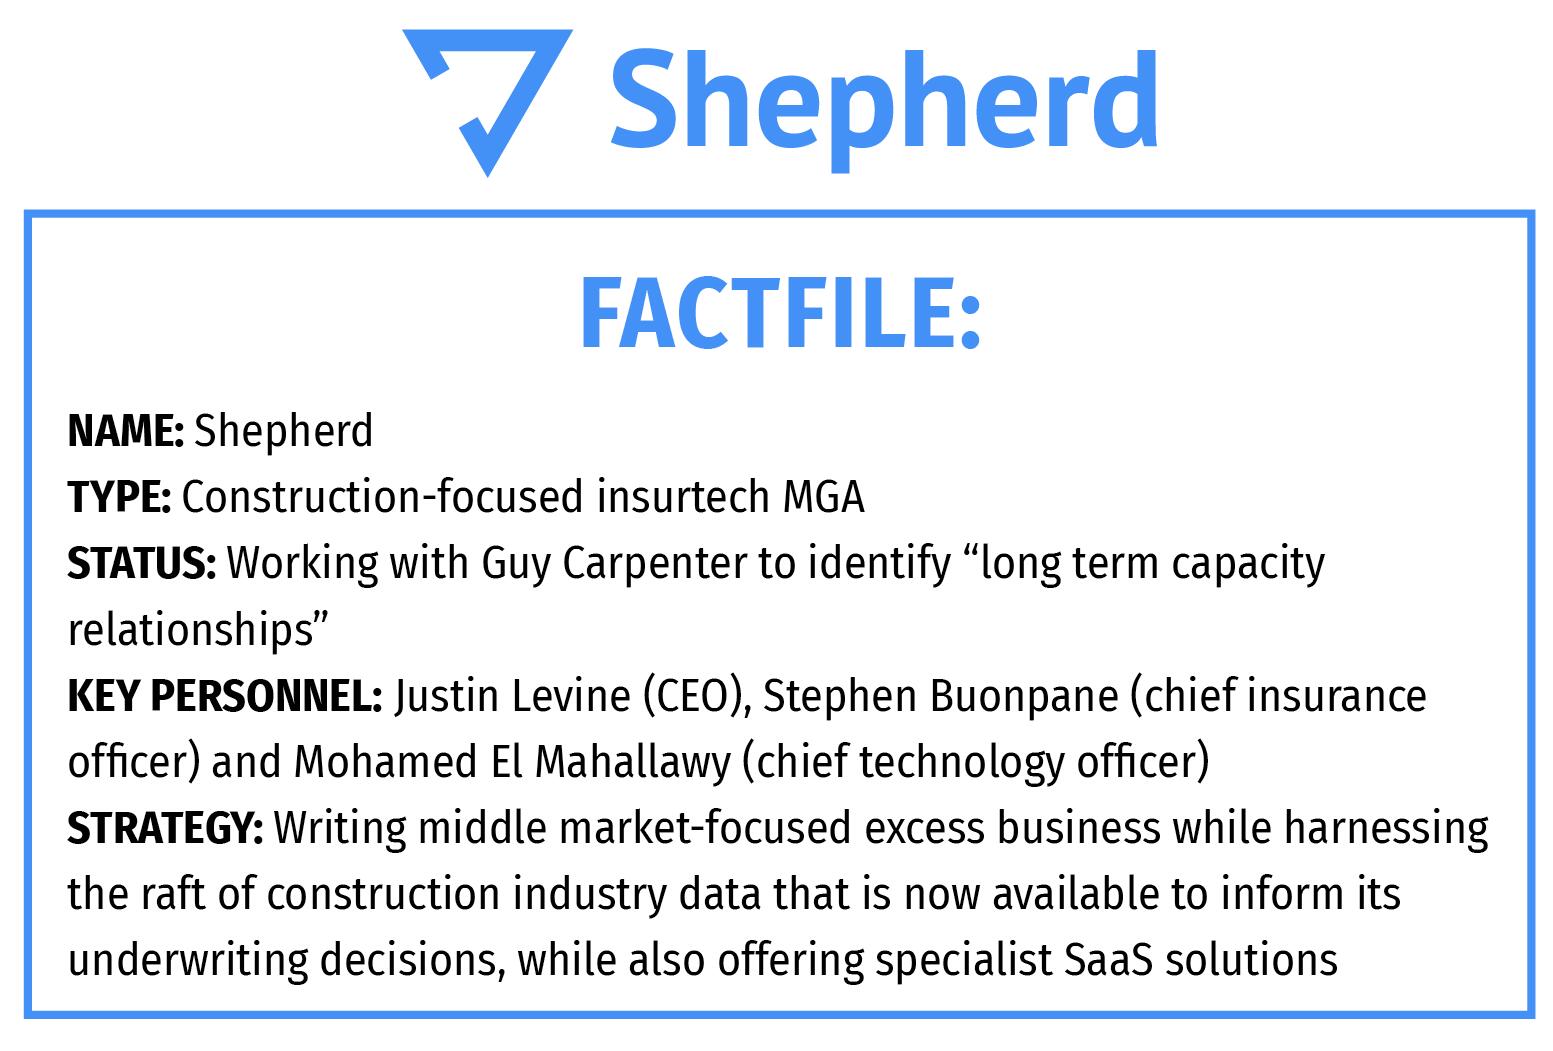 Shepherd factfile